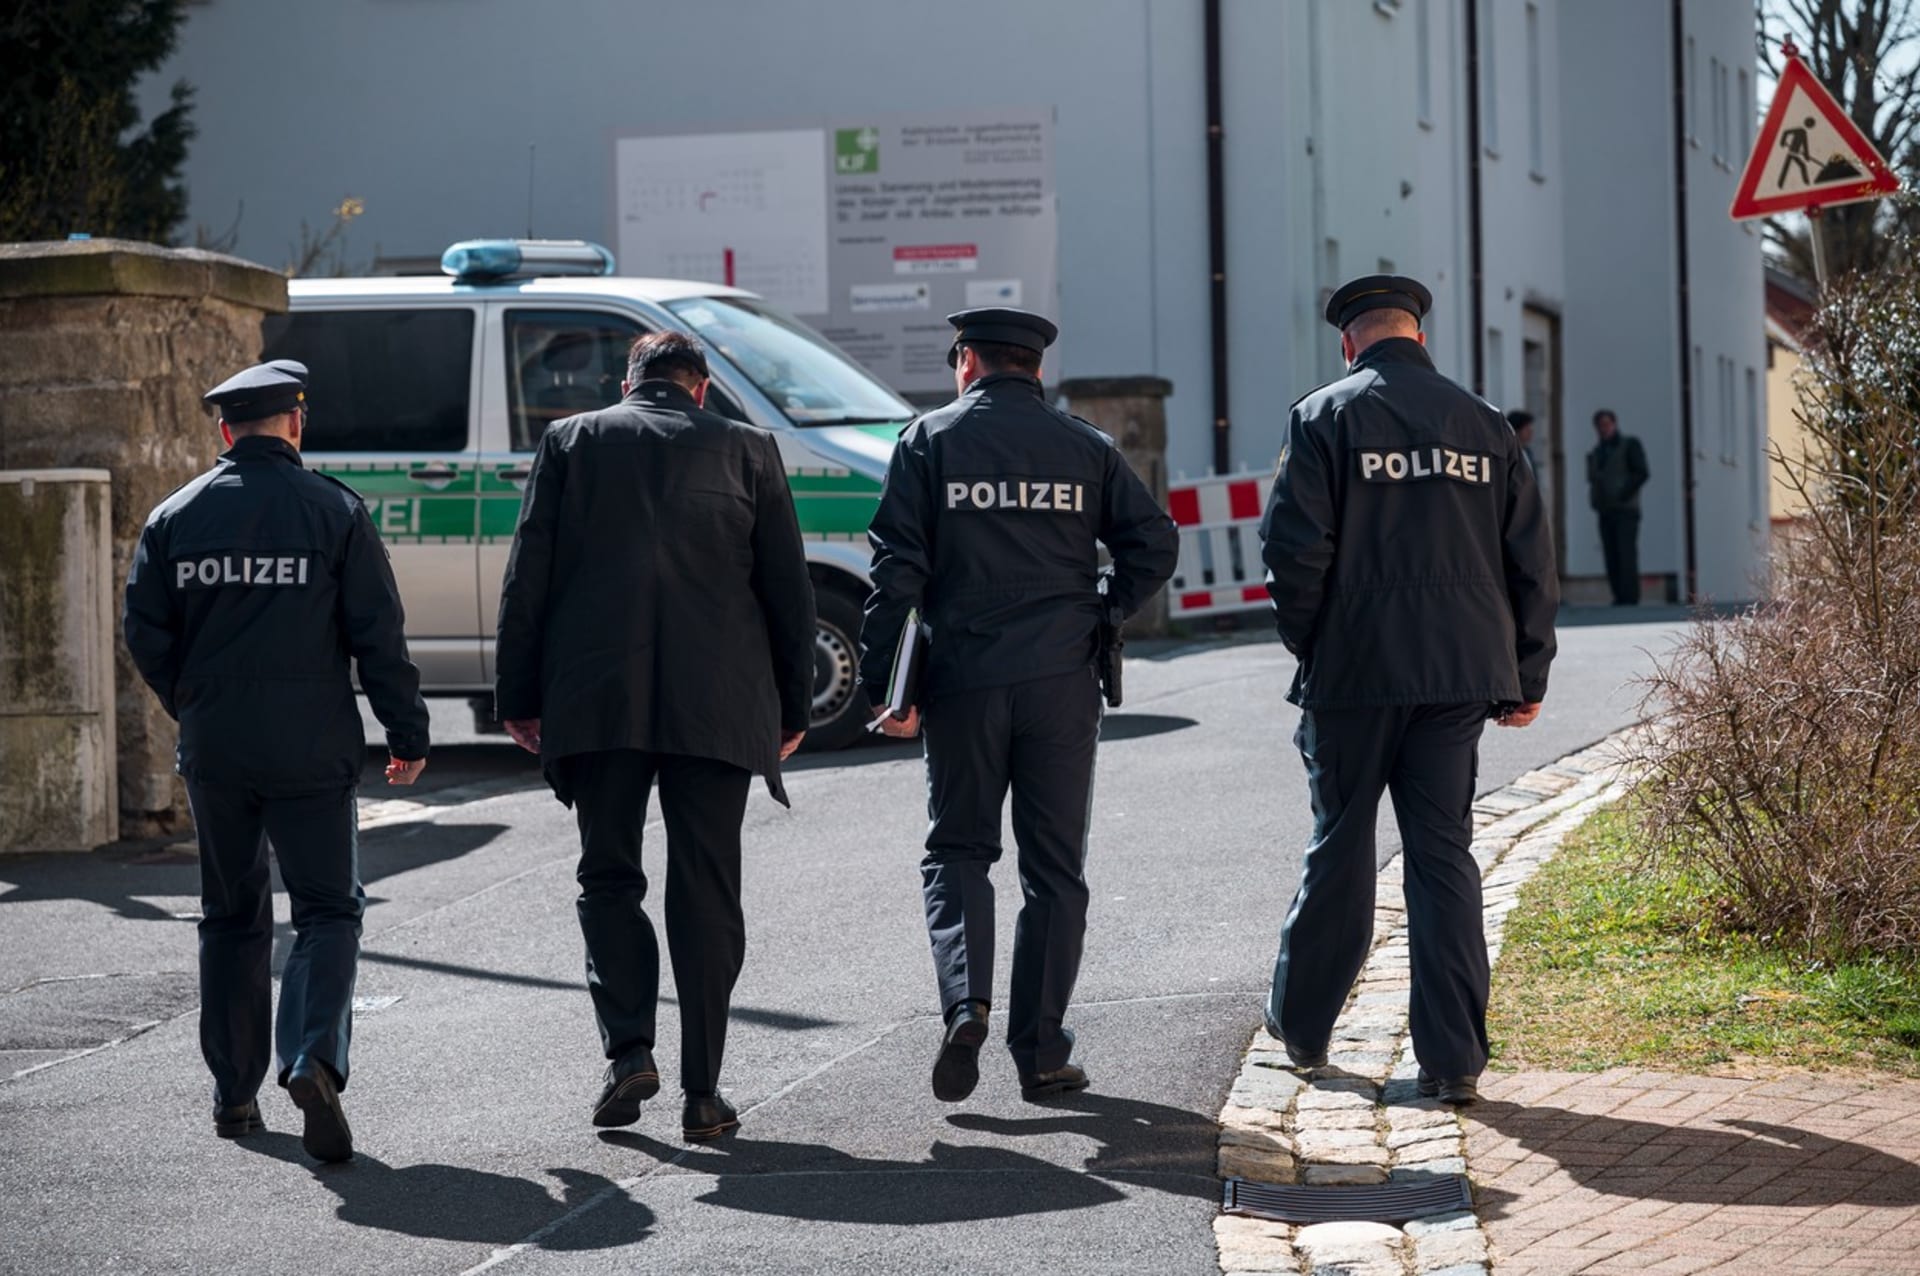 Německá policie vyšetřuje smrt desetileté dívky ze zařízení pro děti a mladistvé v bavorské obci Wunsiedel.